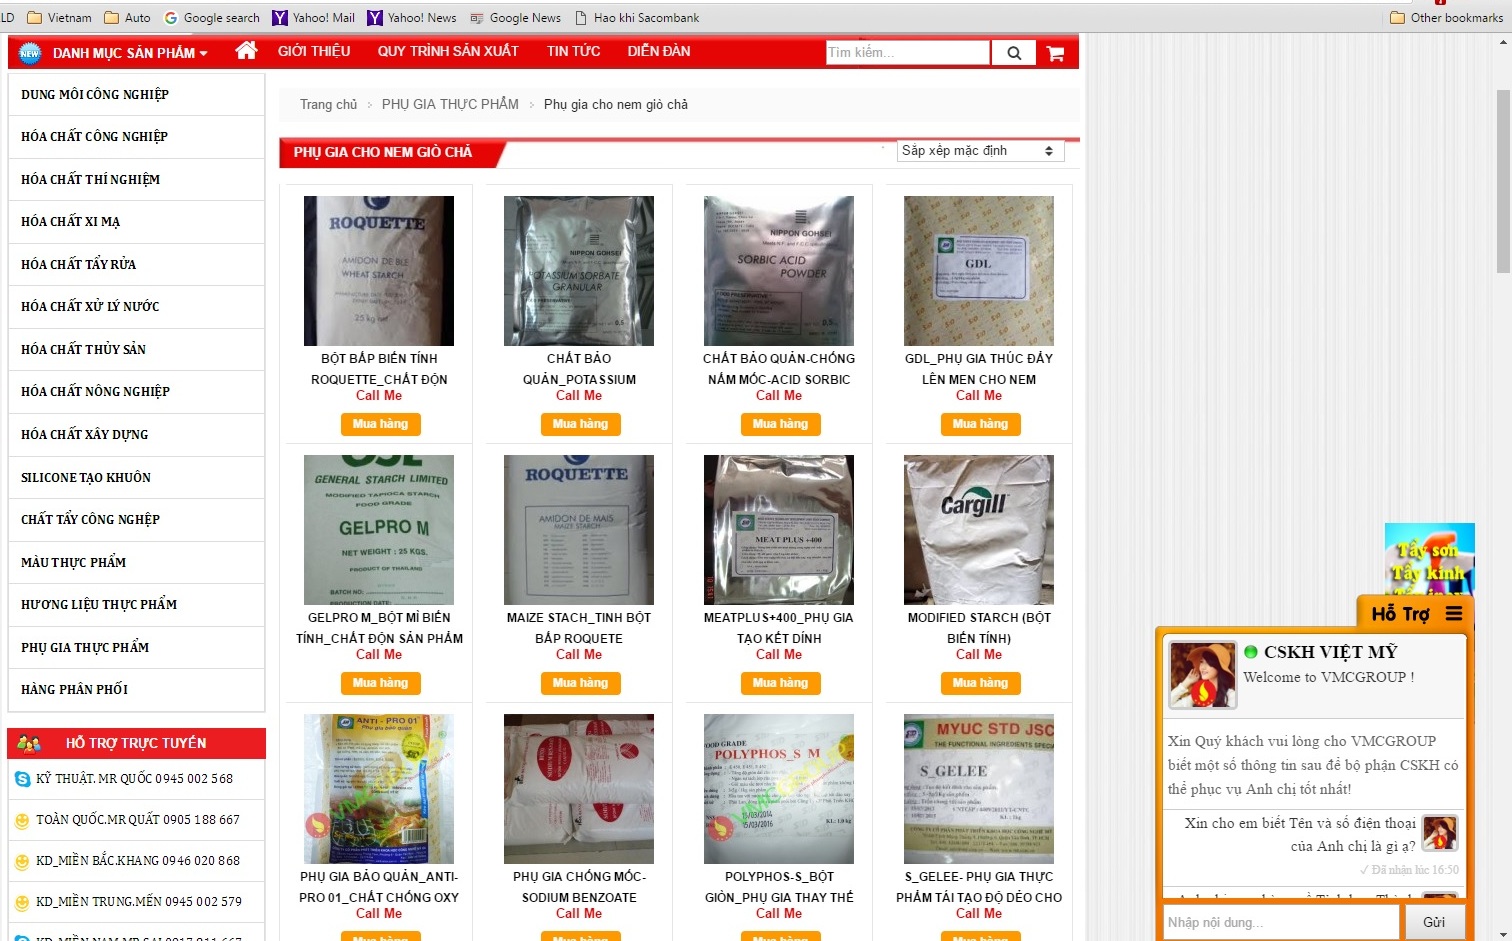 Nhiều hóa chất dùng cho thực phẩm được bán vô tư trên mạng - Ảnh: chụp từ website